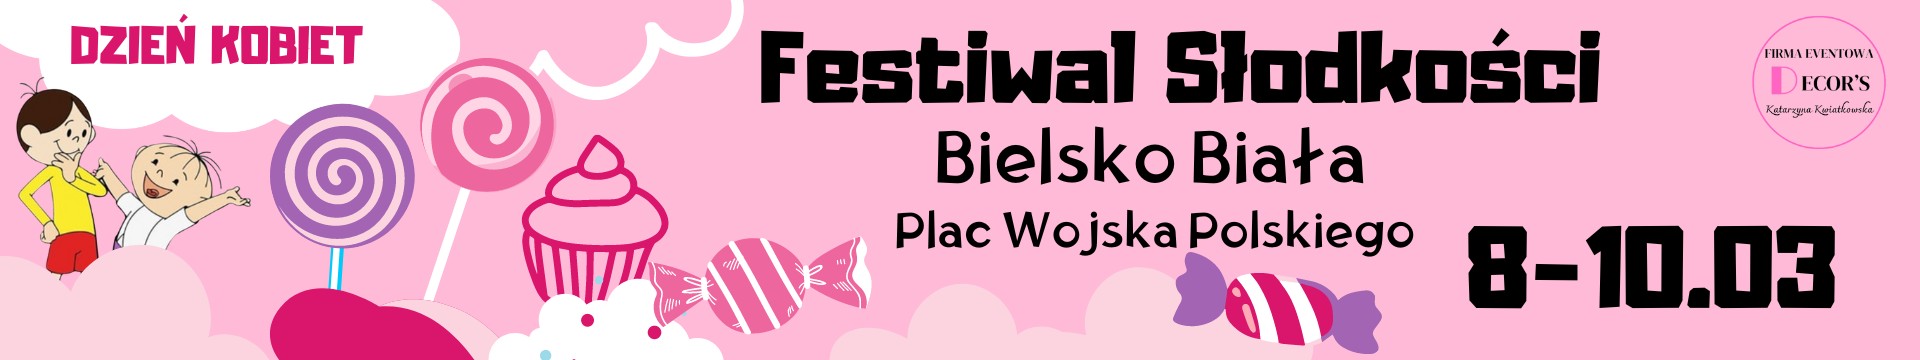 Festiwal słodkosci